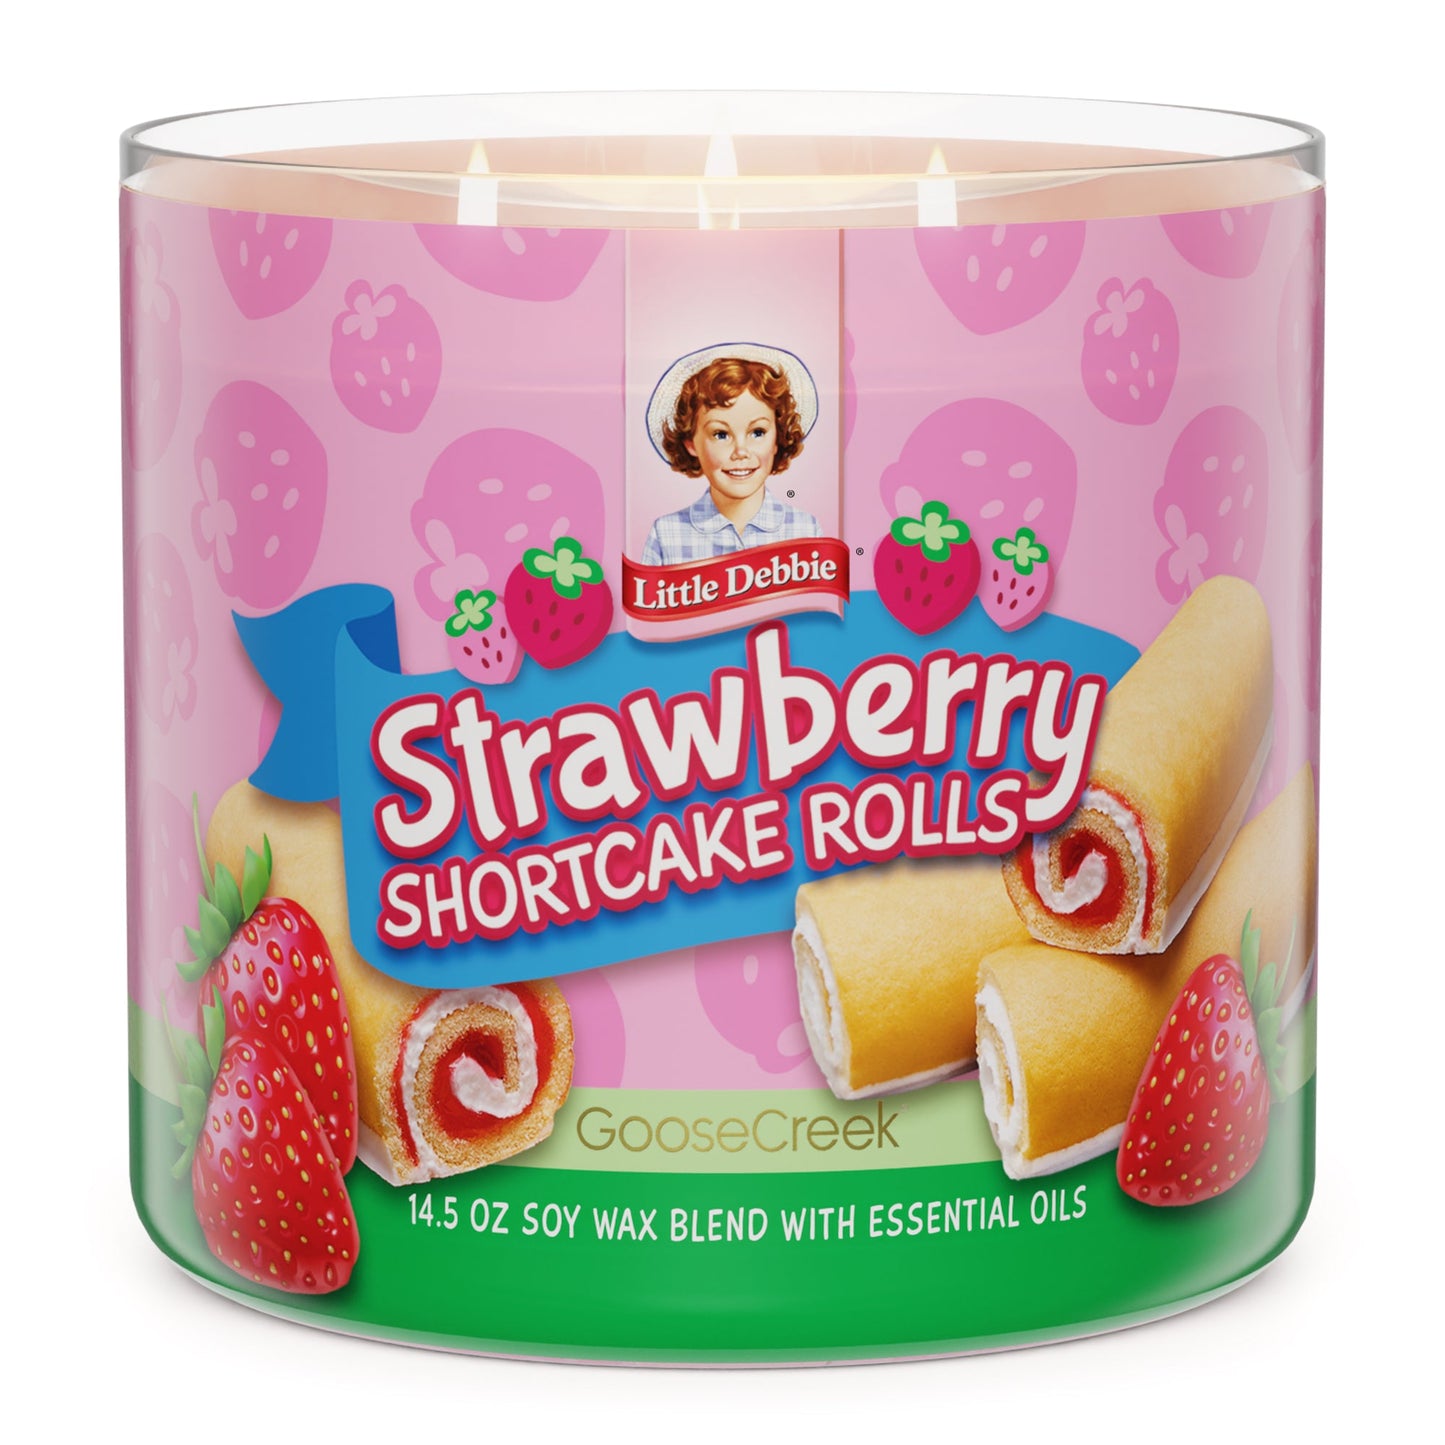 Strawberry Shortcake Rolls Little Debbie ™ 3-Wick Candle